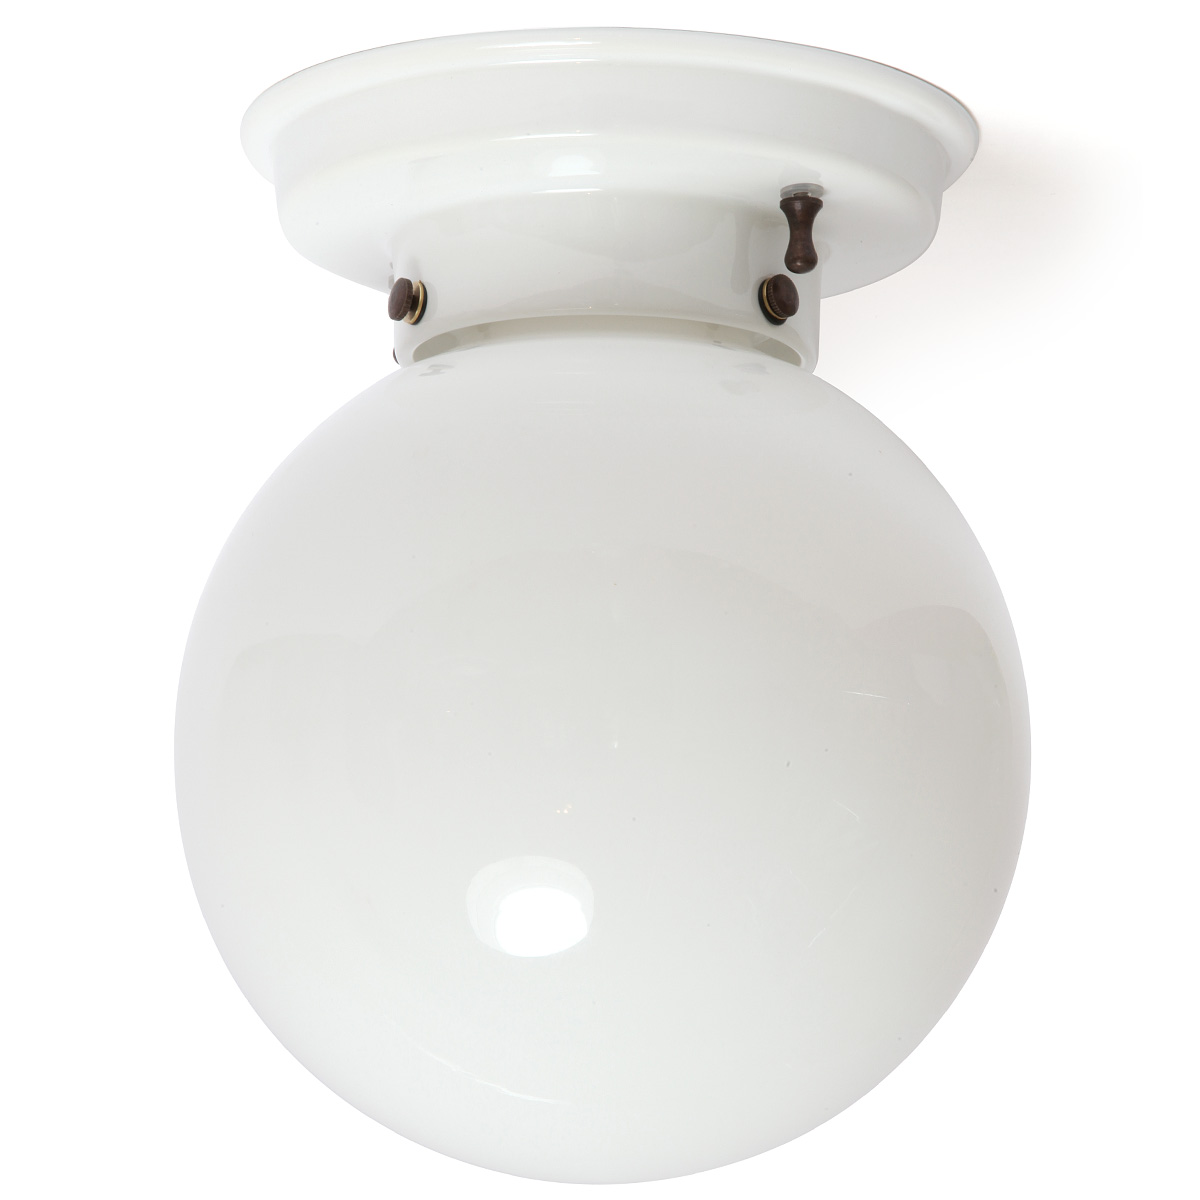 Italienische Keramik-Deckenlampe mit Glaskugel Ø 20 cm: Deckenleuchte mit glasiertem Keramik-Sockel und Glas-Kugel